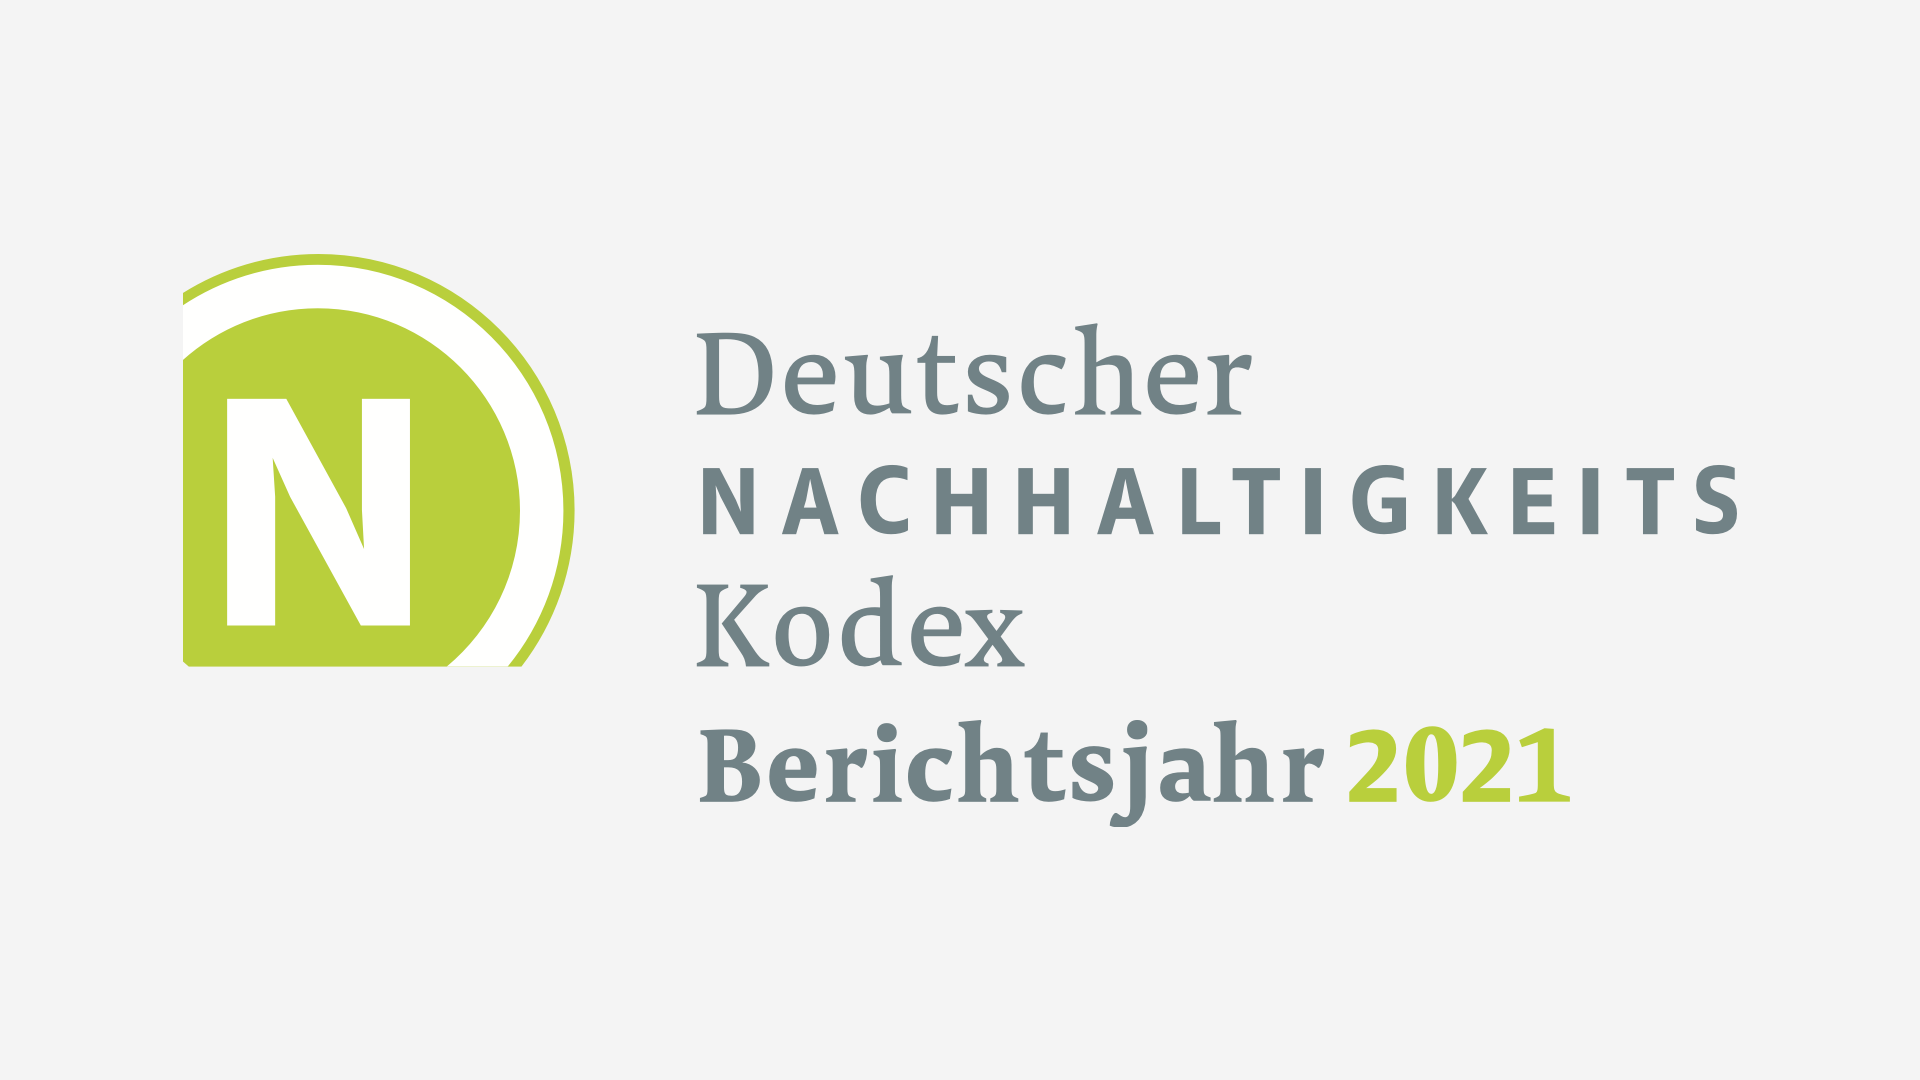 Deutsche Nachhaltigkeits Kodex Berichtsjahr 2021